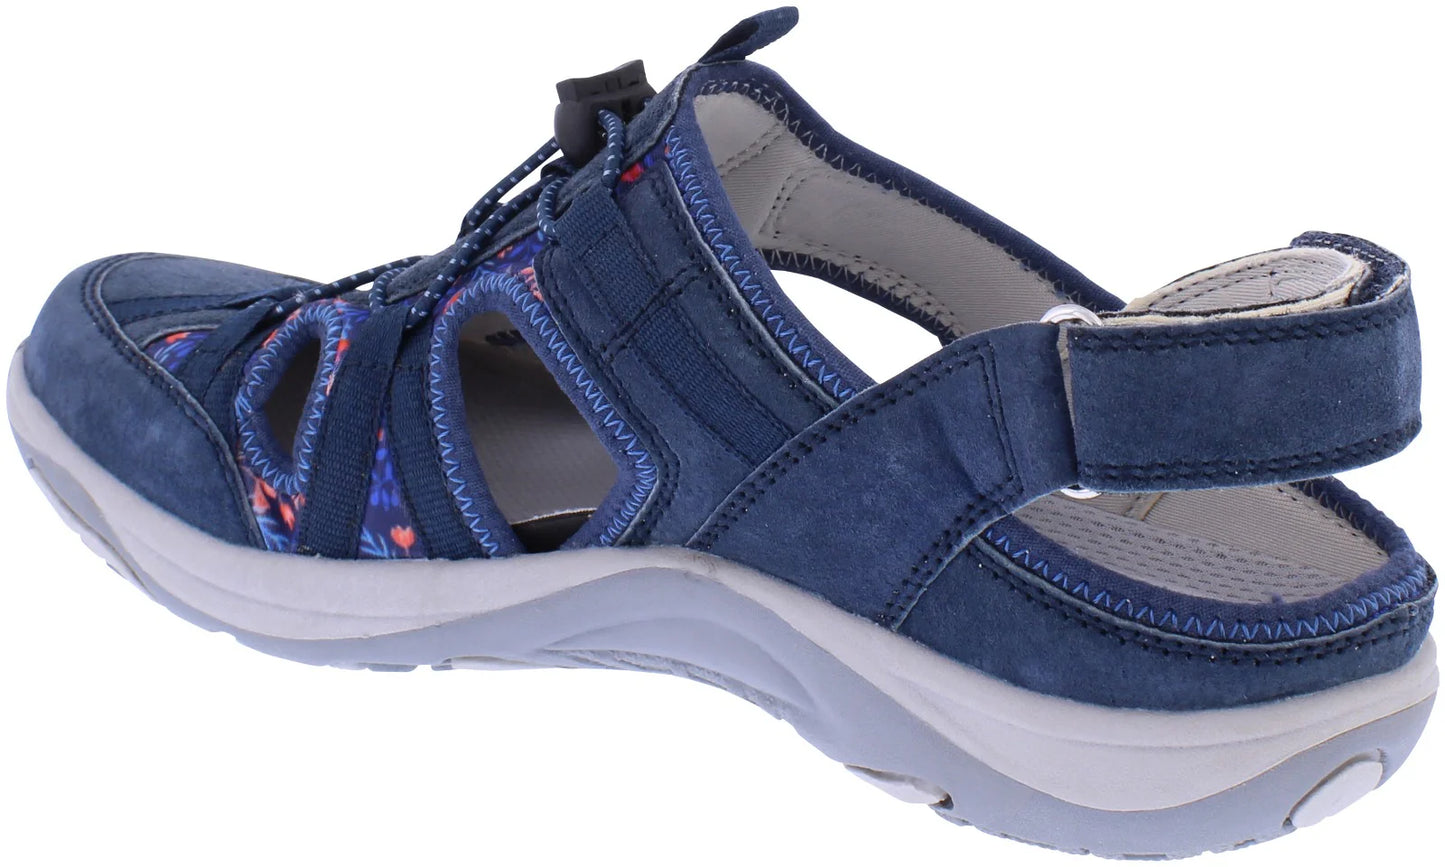 Free Spirit Women's 41121 Bryn Suede Leather Sandals Navy Blue